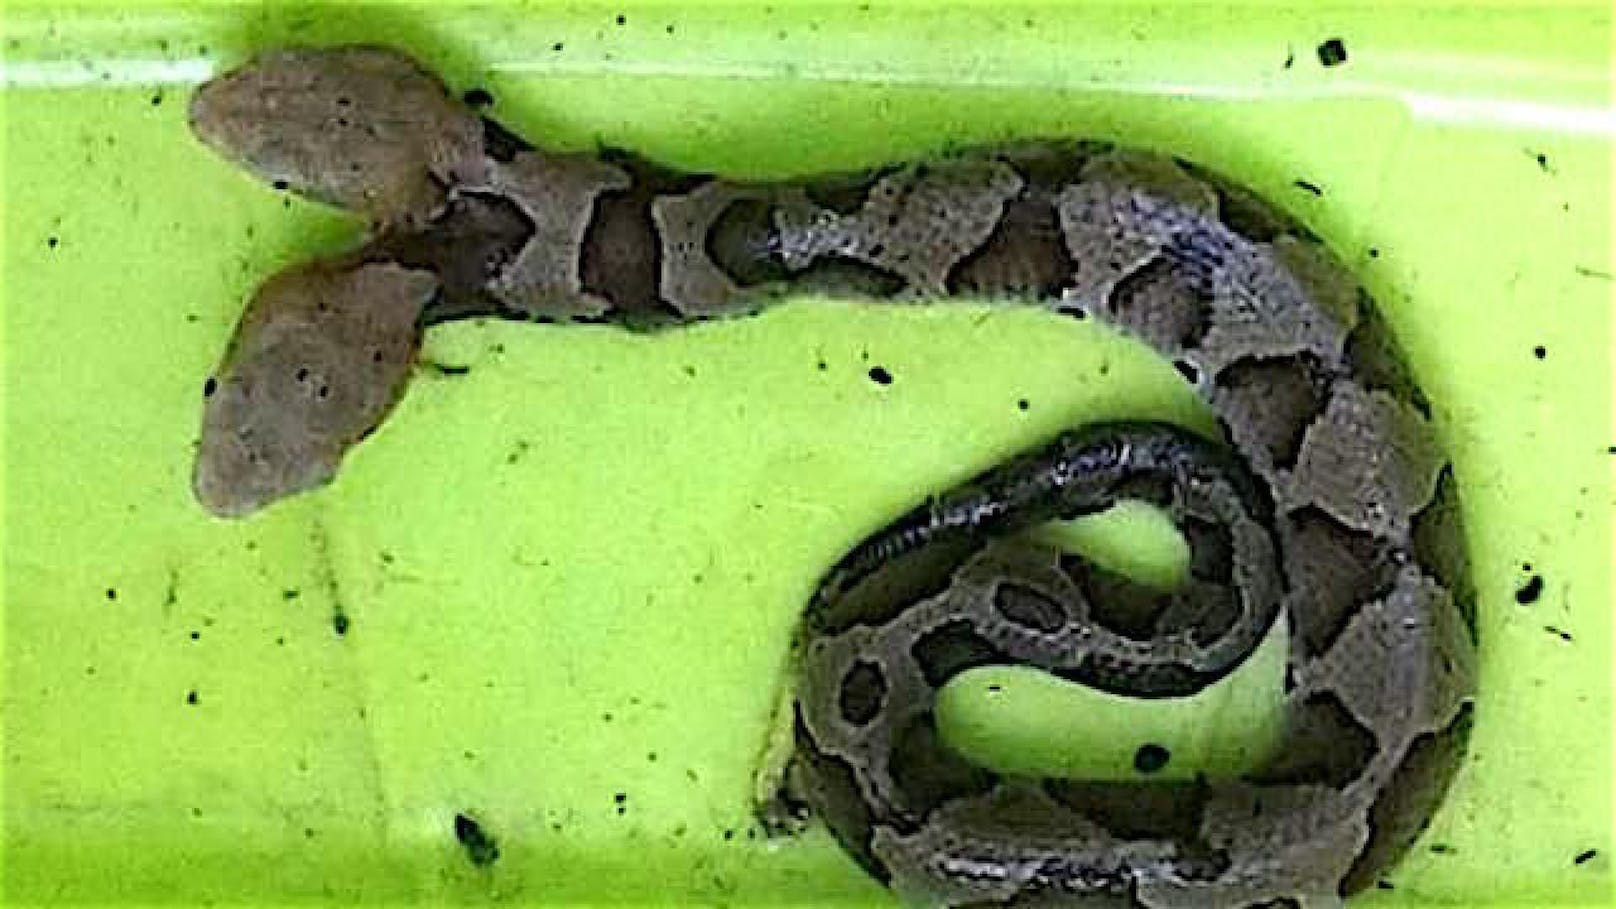 Die seltene zweiköpfige Schlange wurde in einem Garten in Virginia (USA) gefunden. 